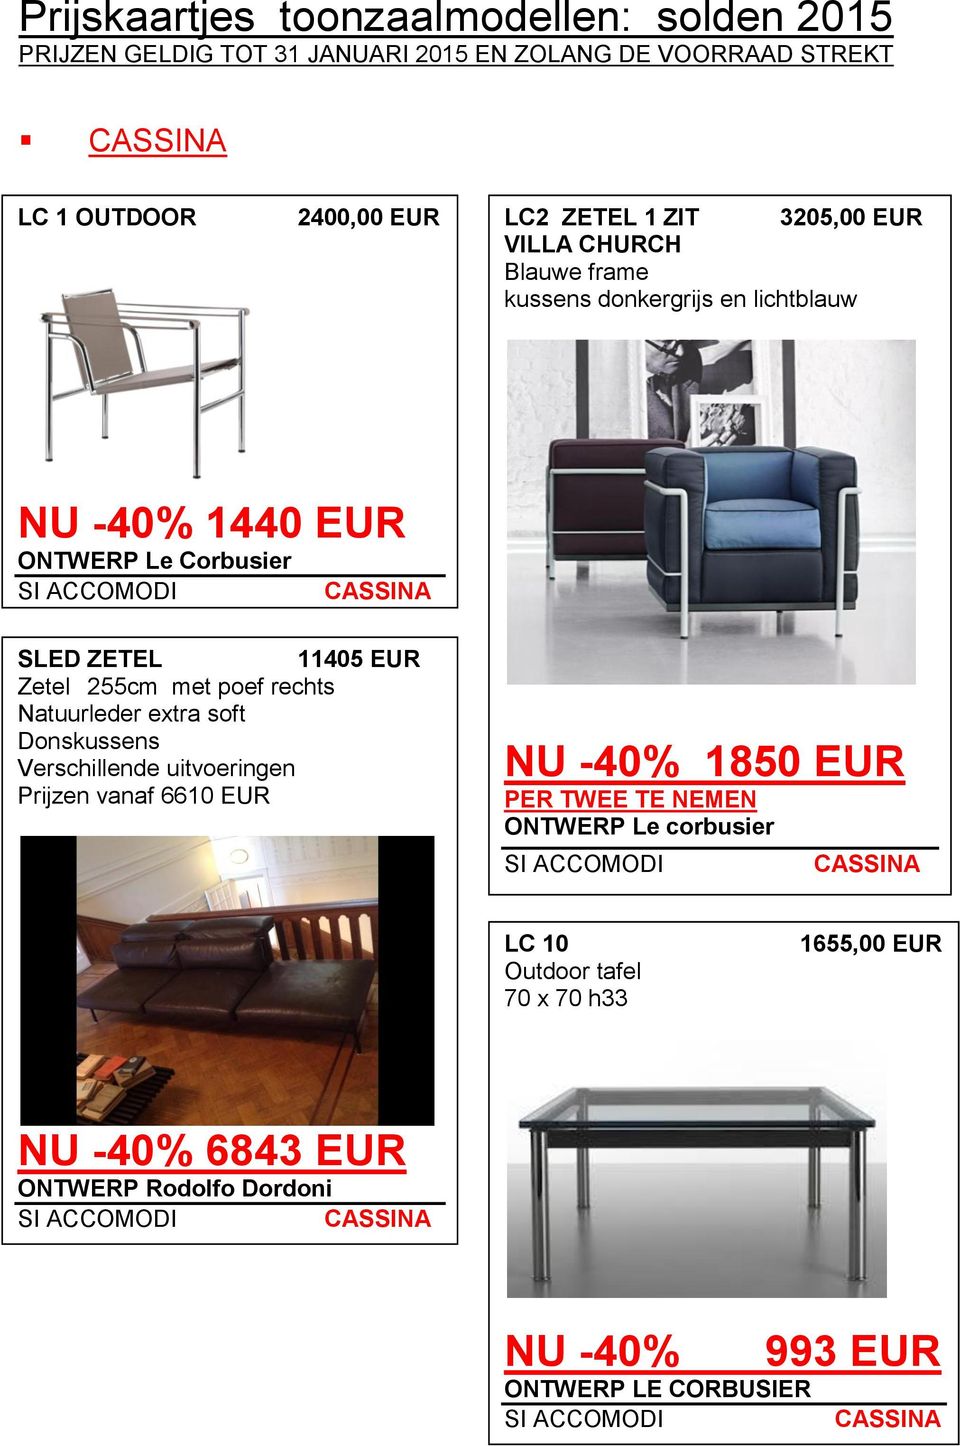 soft Donskussens Verschillende uitvoeringen Prijzen vanaf 6610 EUR 1850 EUR PER TWEE TE NEMEN ONTWERP Le corbusier